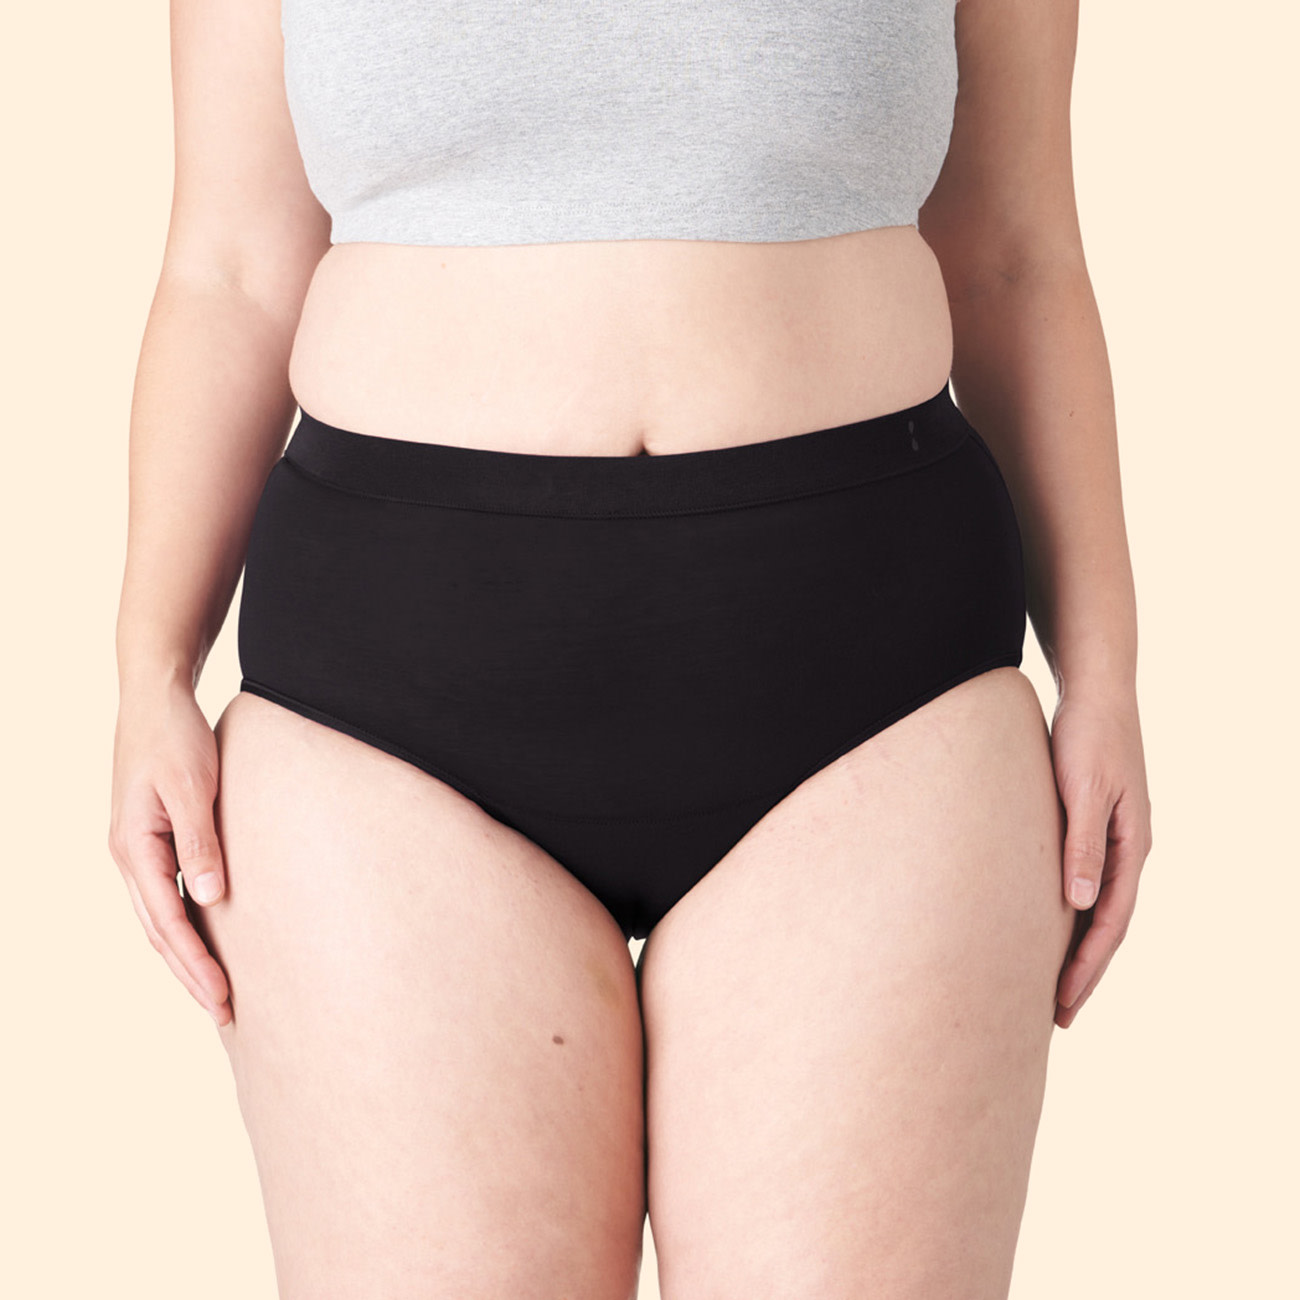 Thinx for All™ Women's Hi-Waist Period Underwear, Super Absorbency, Black